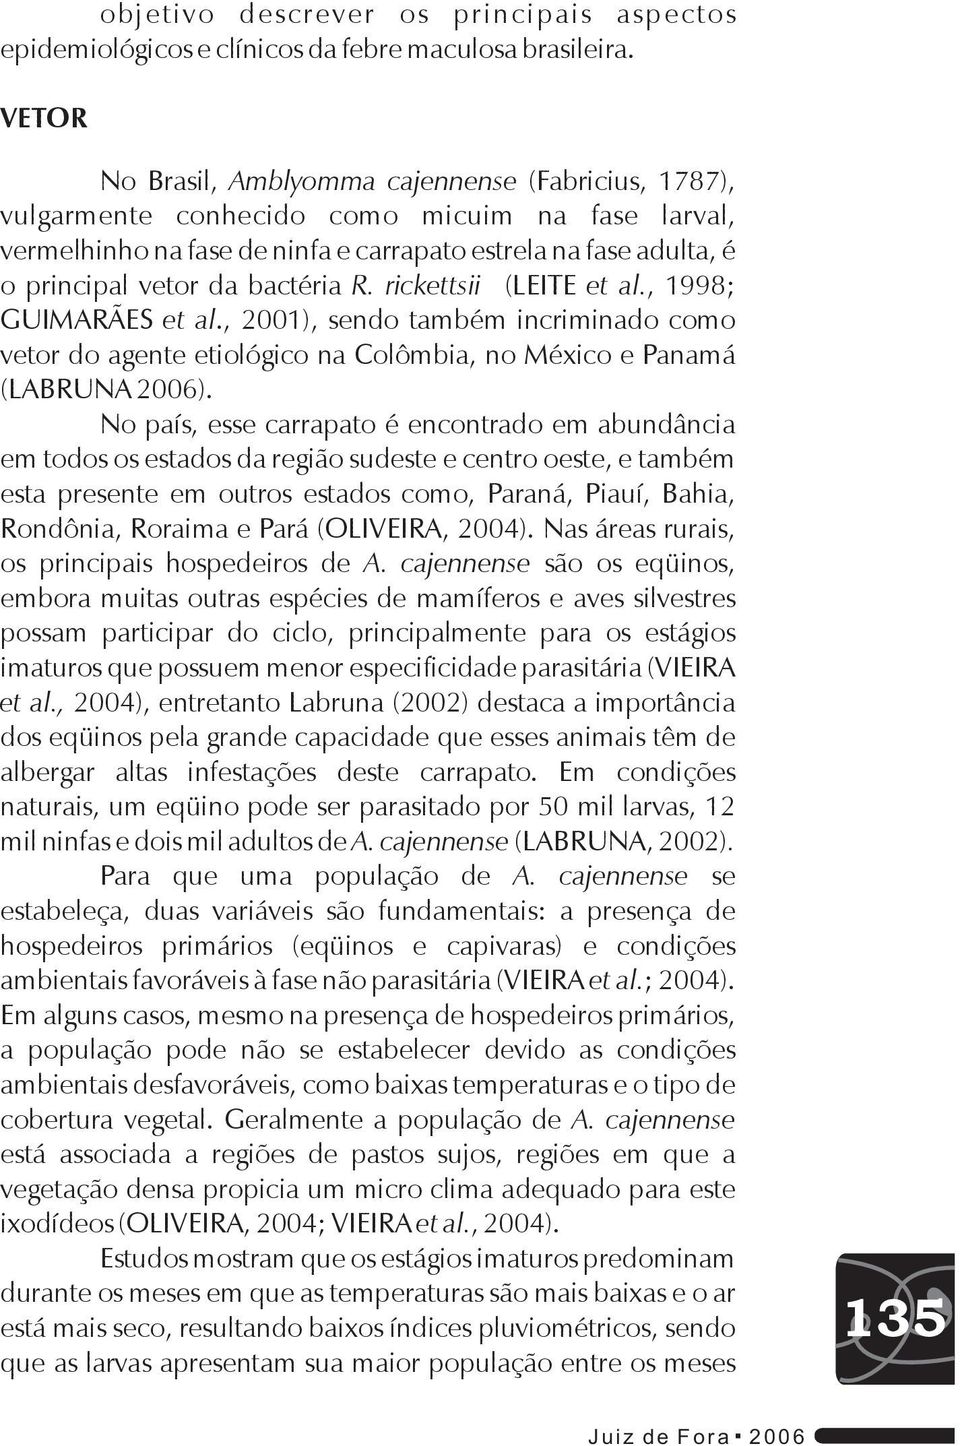 bactéria R. rickettsii (LEITE et al., 1998; GUIMARÃES et al., 2001), sendo também incriminado como vetor do agente etiológico na Colômbia, no México e Panamá (LABRUNA 2006).